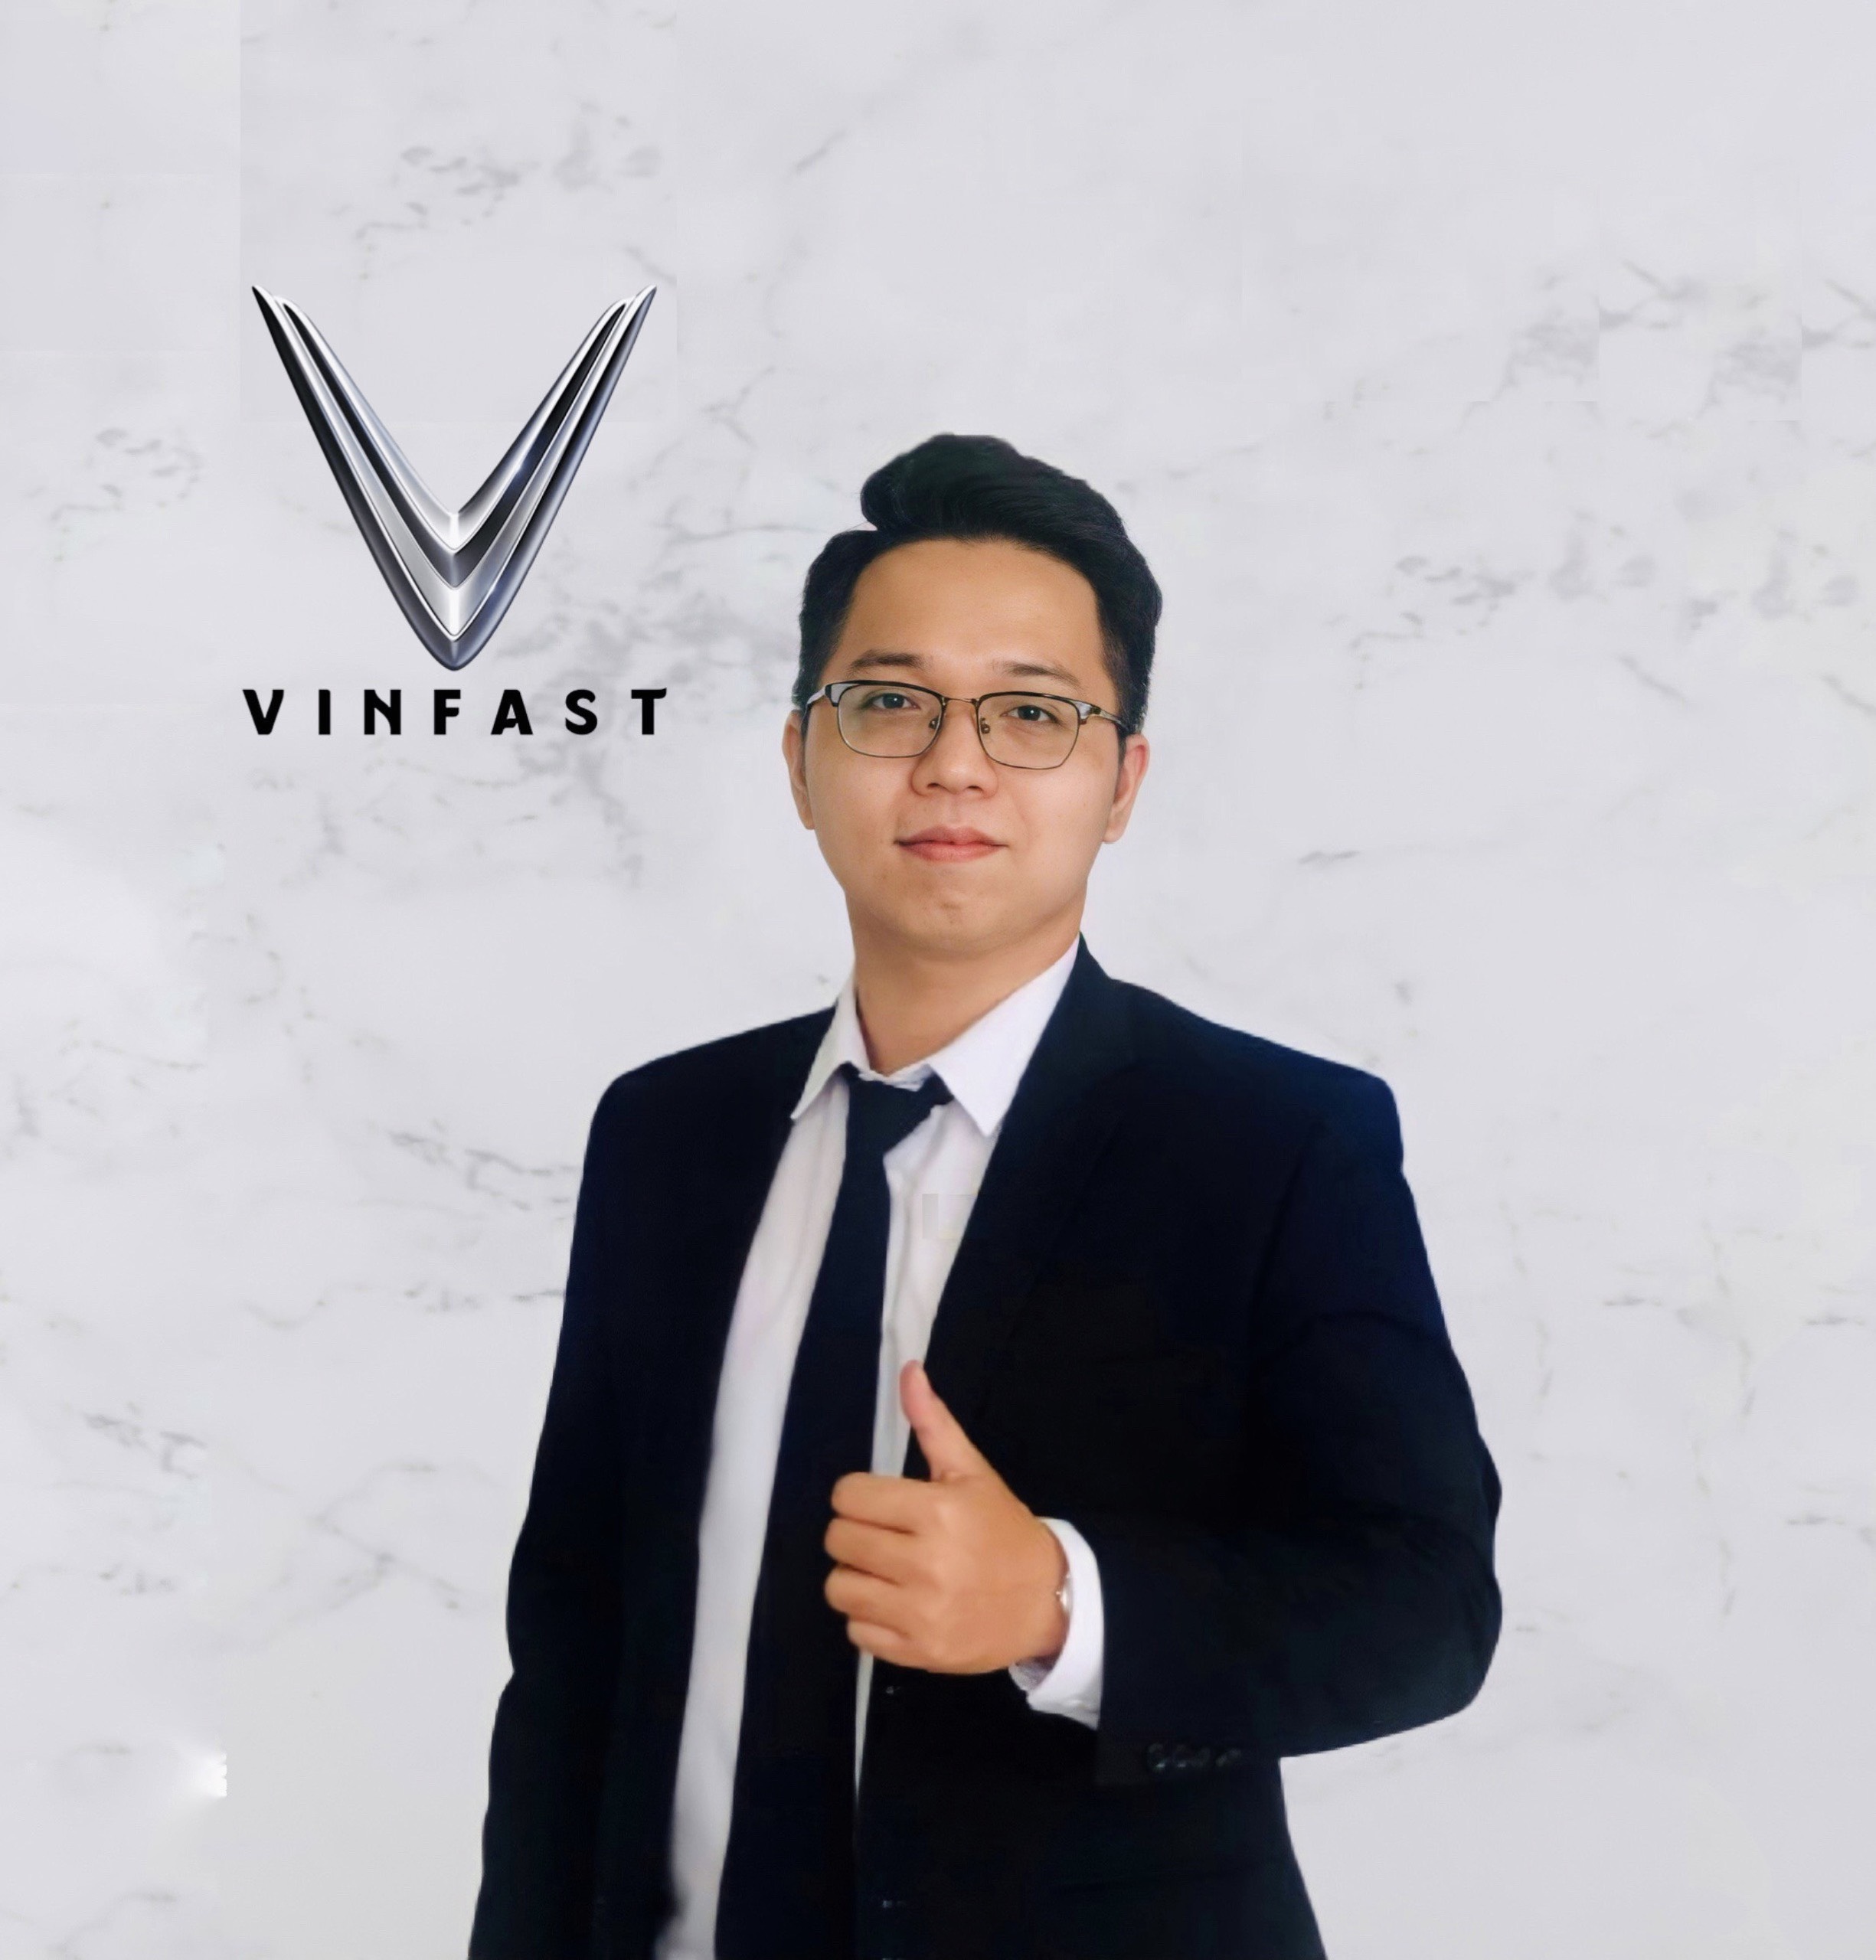 Mr Phú Vinfast Landmark 81